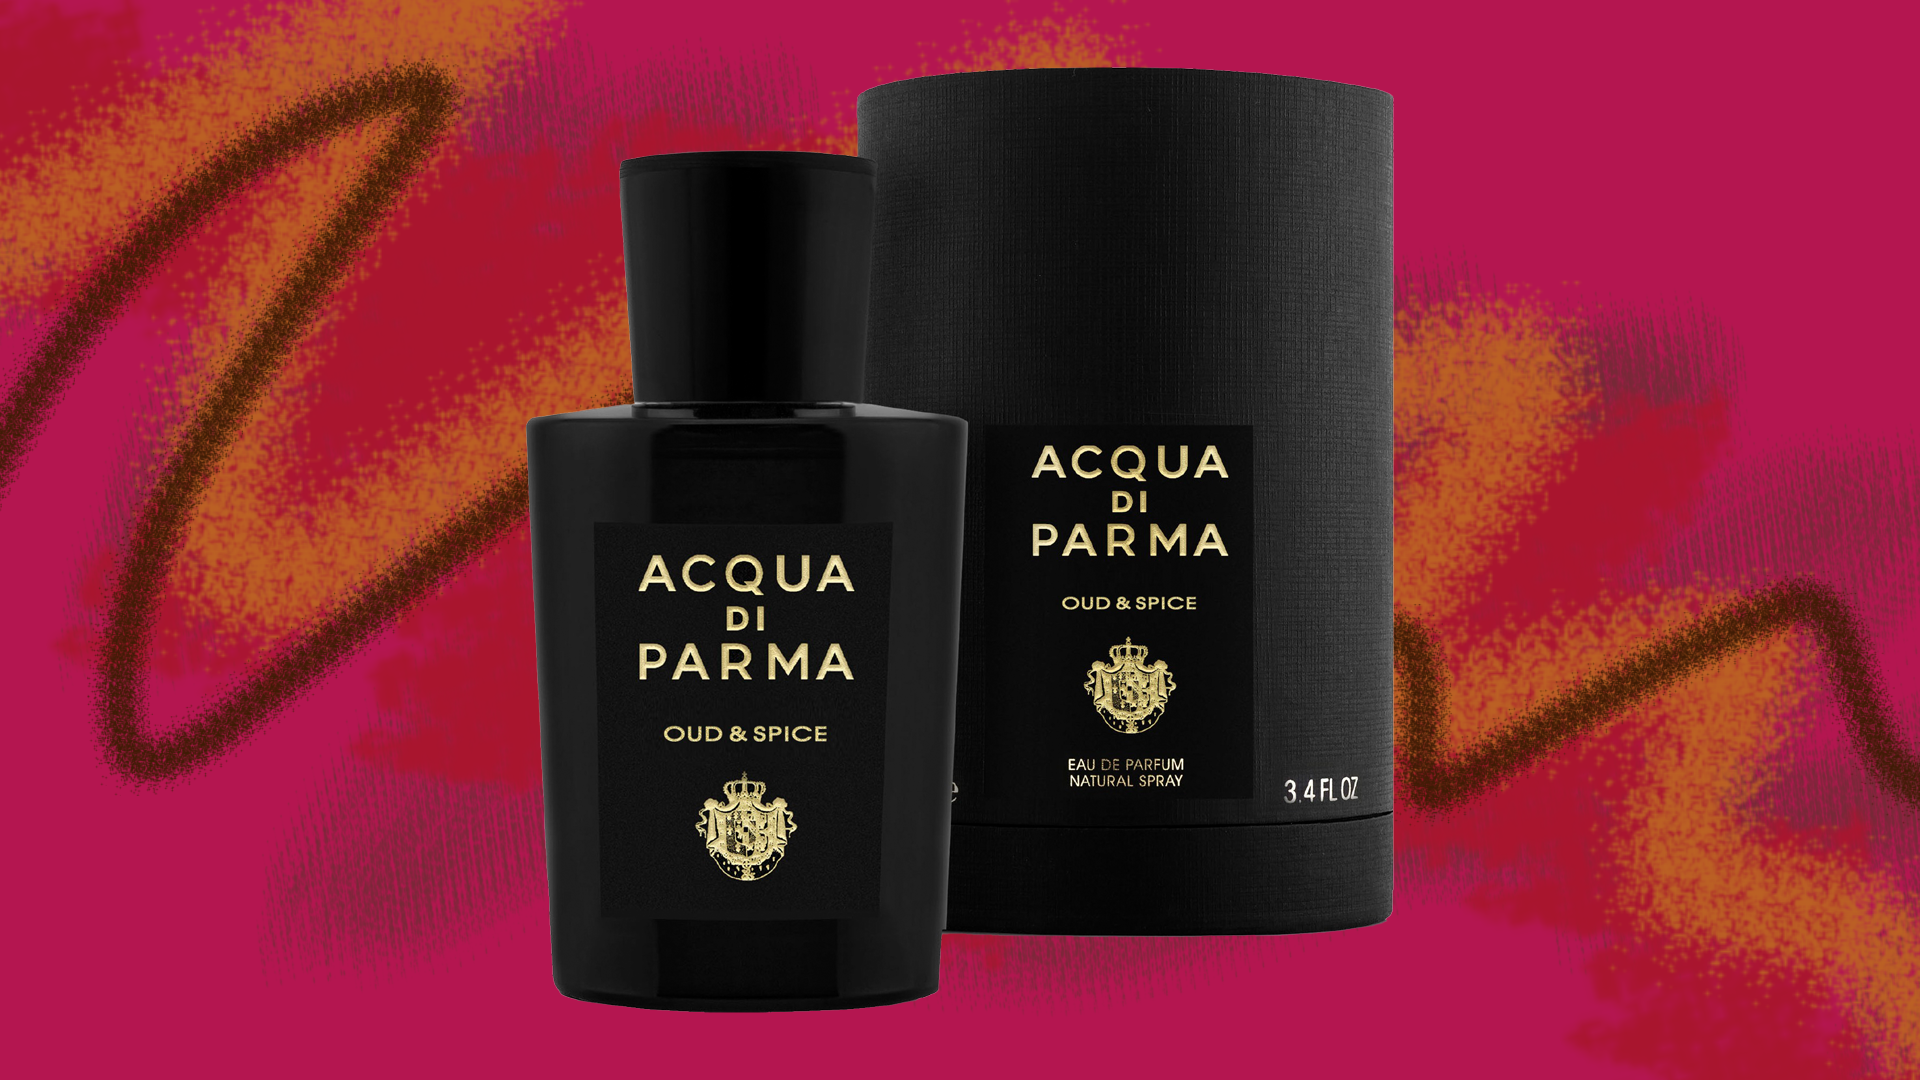 Der Unisex-Duft von Acqua di Parma vereint fruchtige Himbeere und warmen Zimtduft.